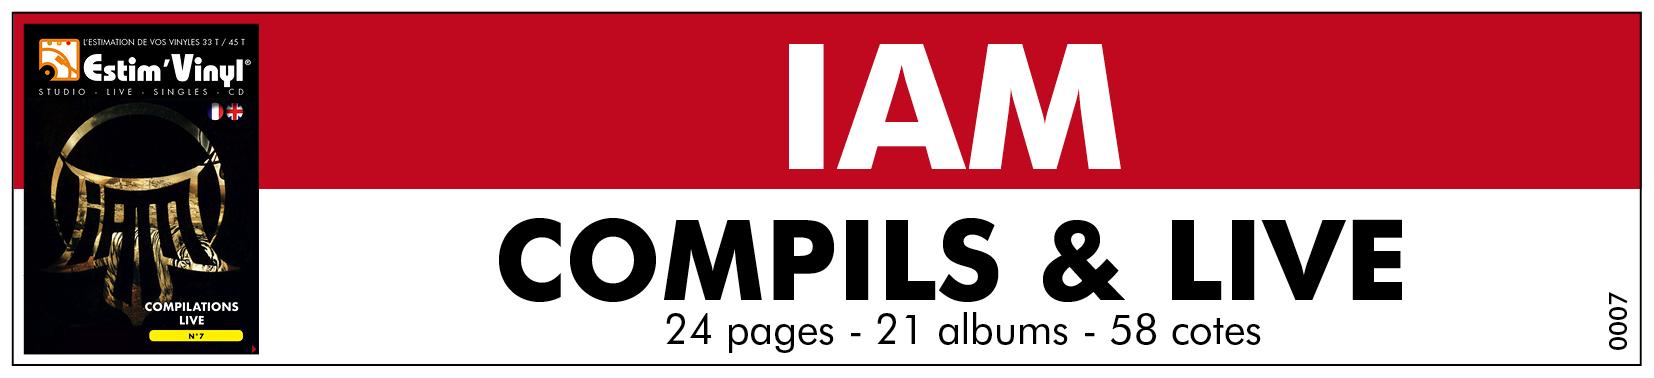 Retrouvez la discographie cotée des albums live et compilation du Groupe IAMt, www.estimvinyl.com